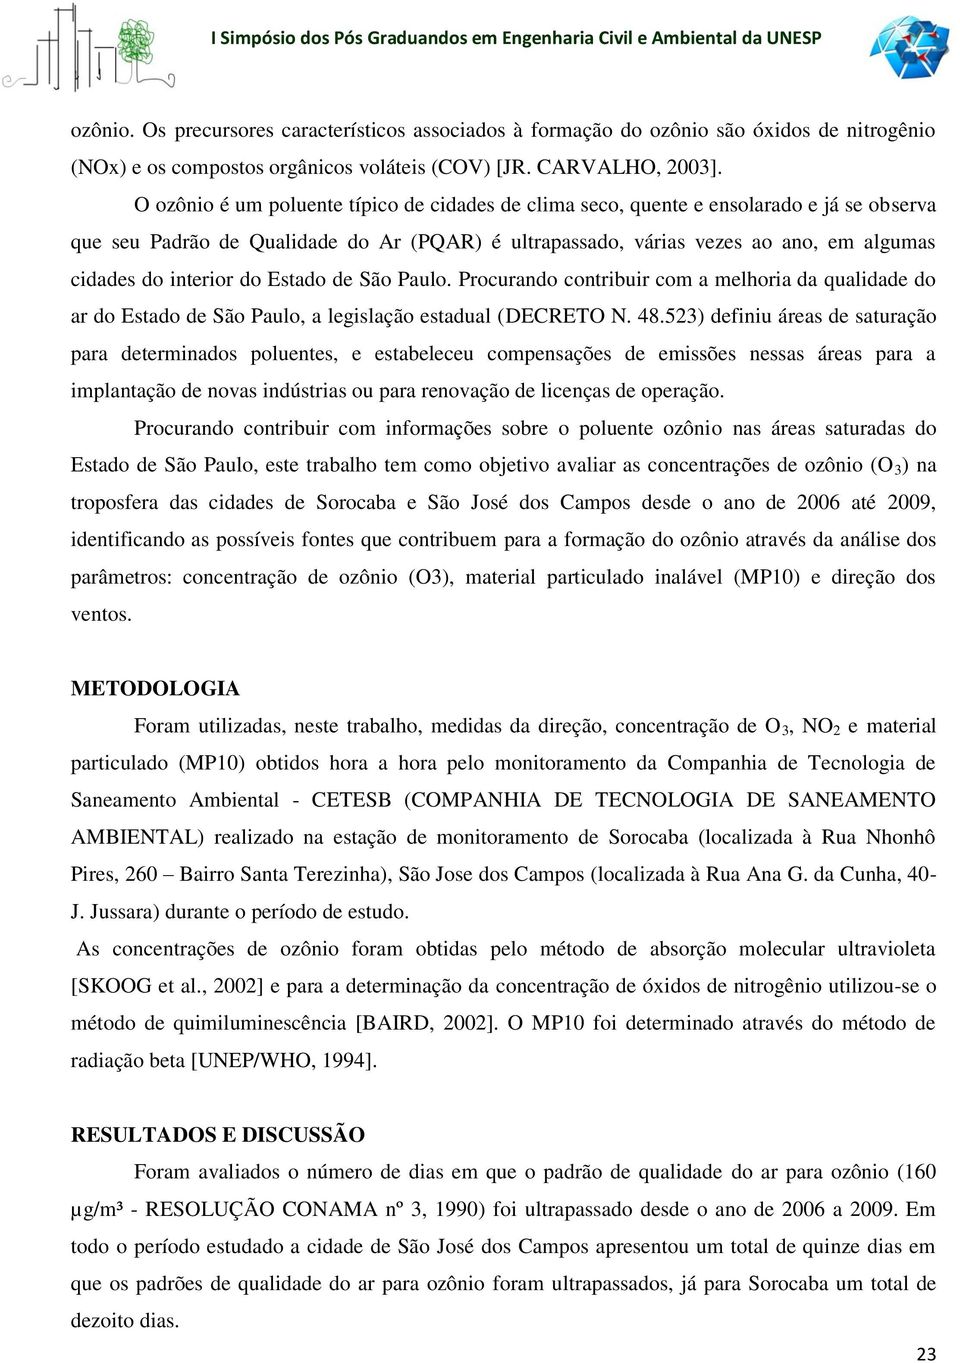 interior do Estado de São Paulo. Procurando contribuir com a melhoria da qualidade do ar do Estado de São Paulo, a legislação estadual (DECRETO N. 48.